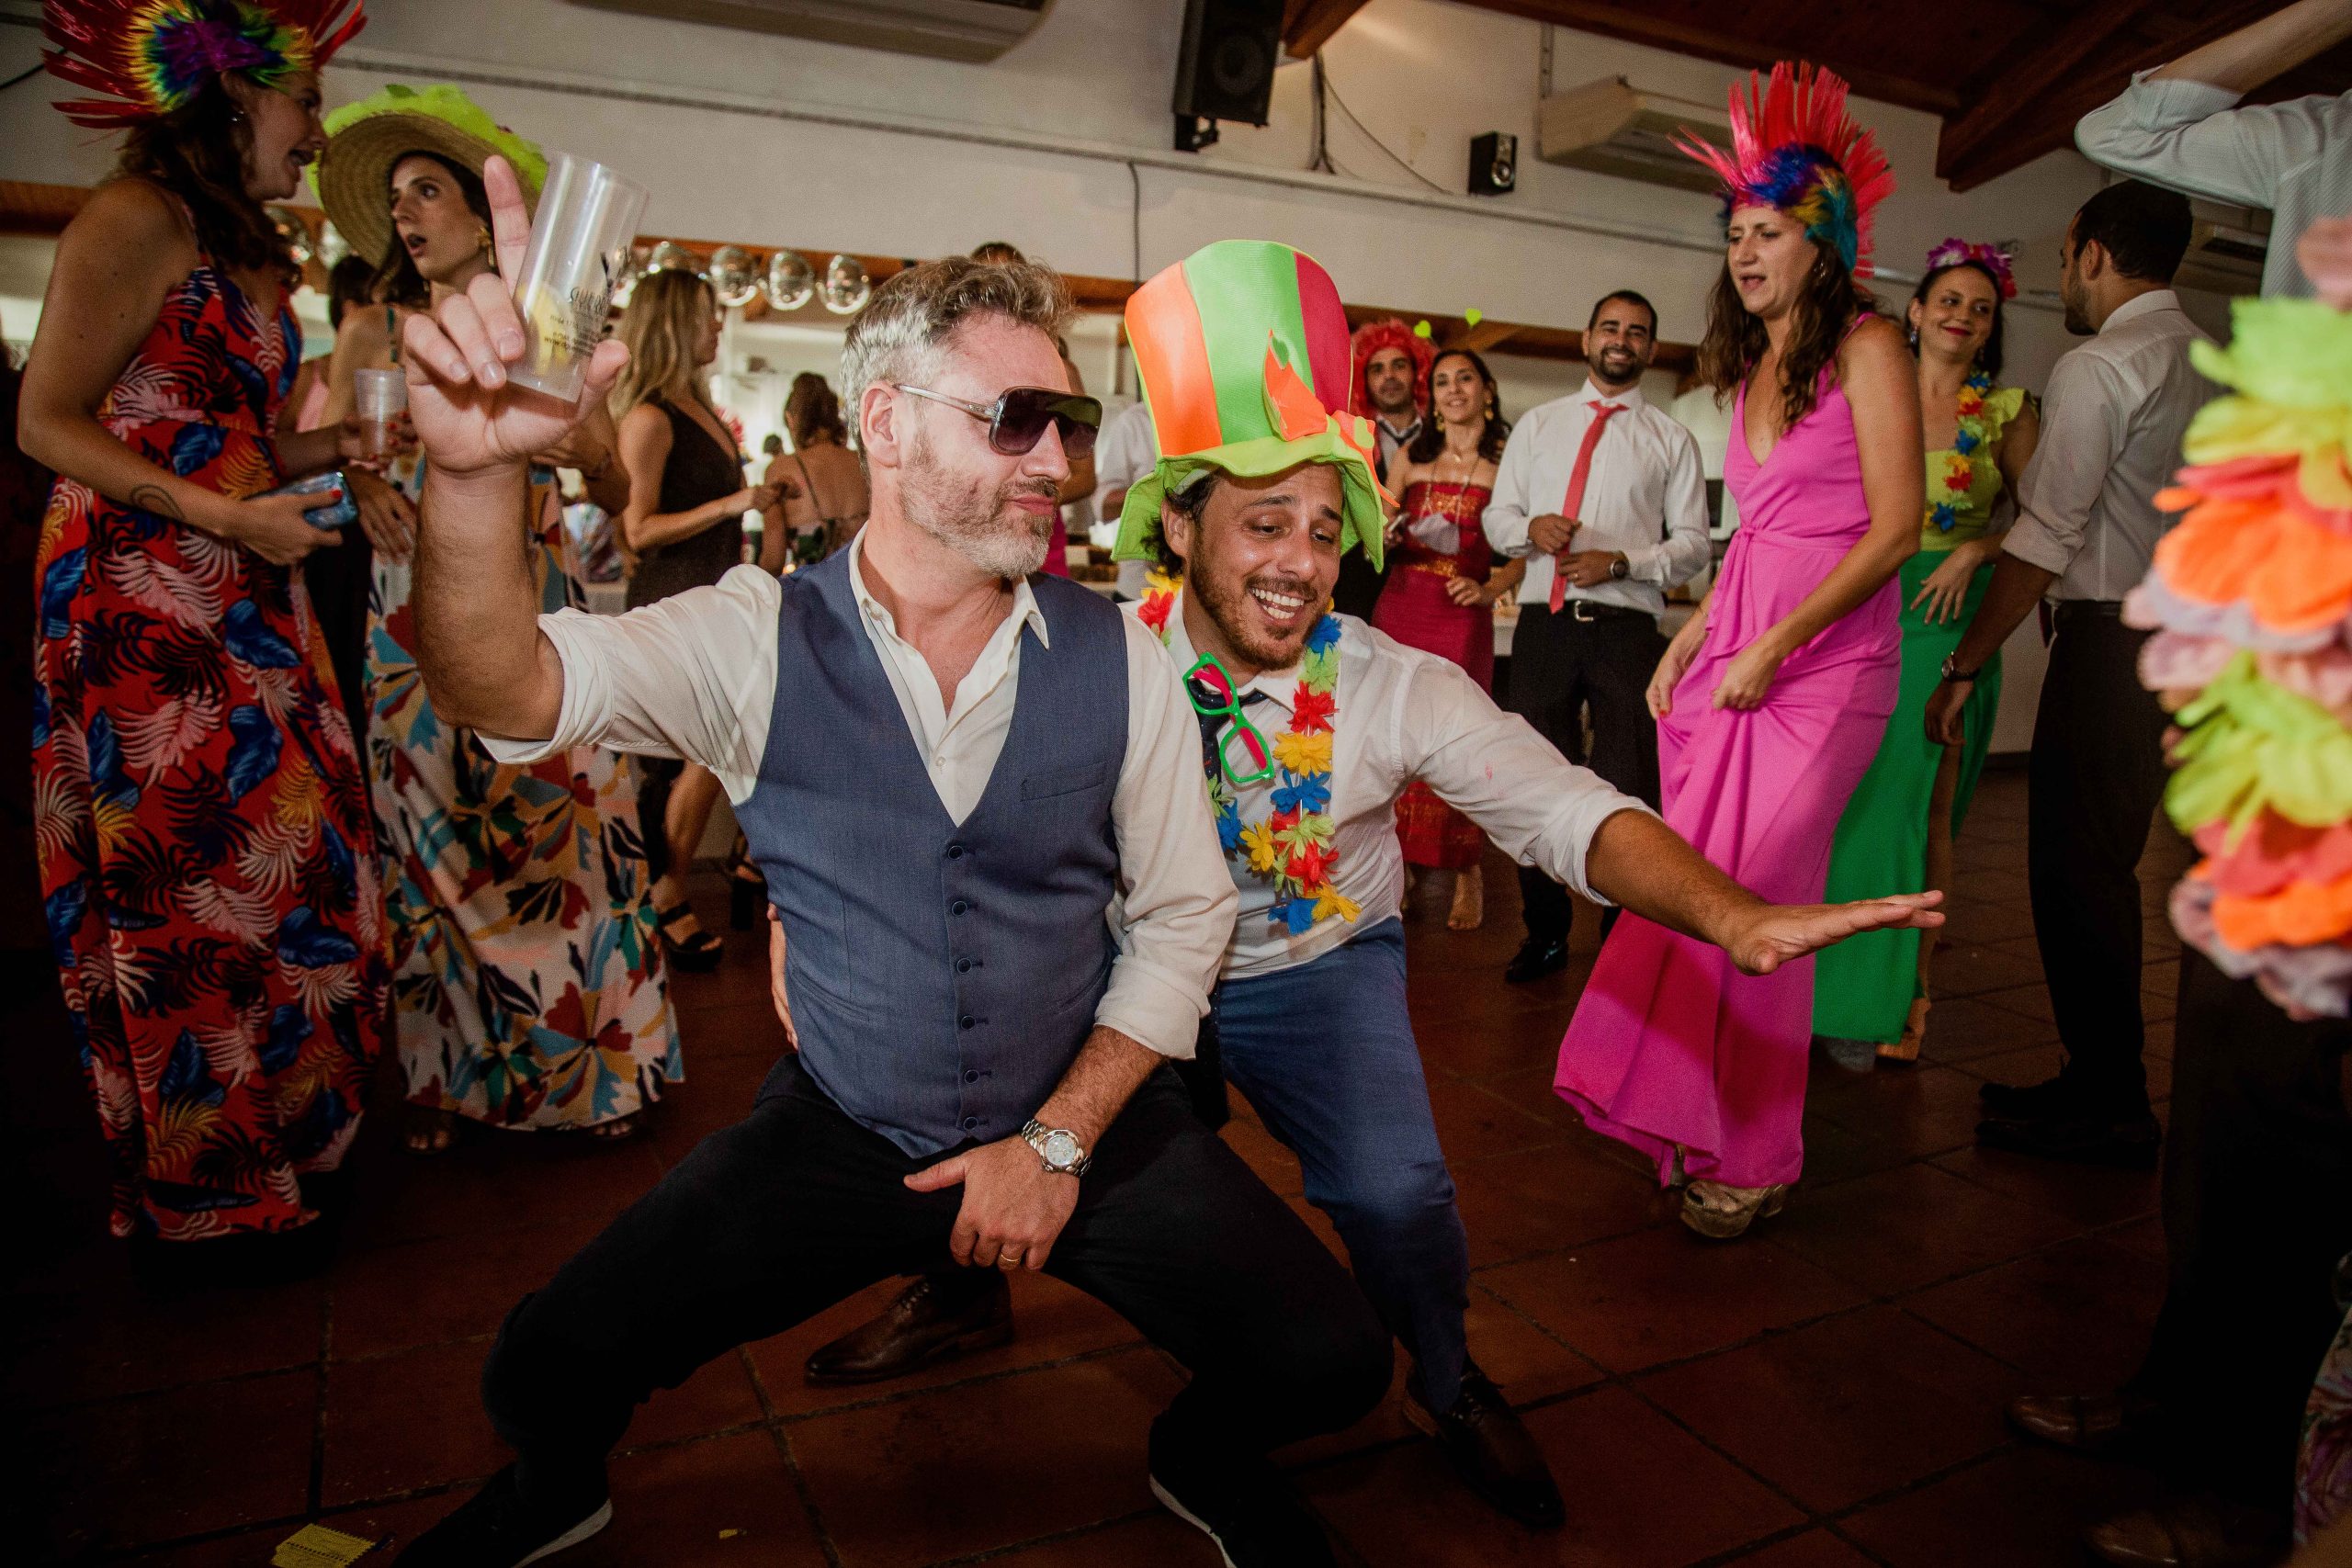 Fotos de la boda de Bren y Pato en Rosario realizadas por Bucle Fotografias Flor Bosio y Caro Clerici